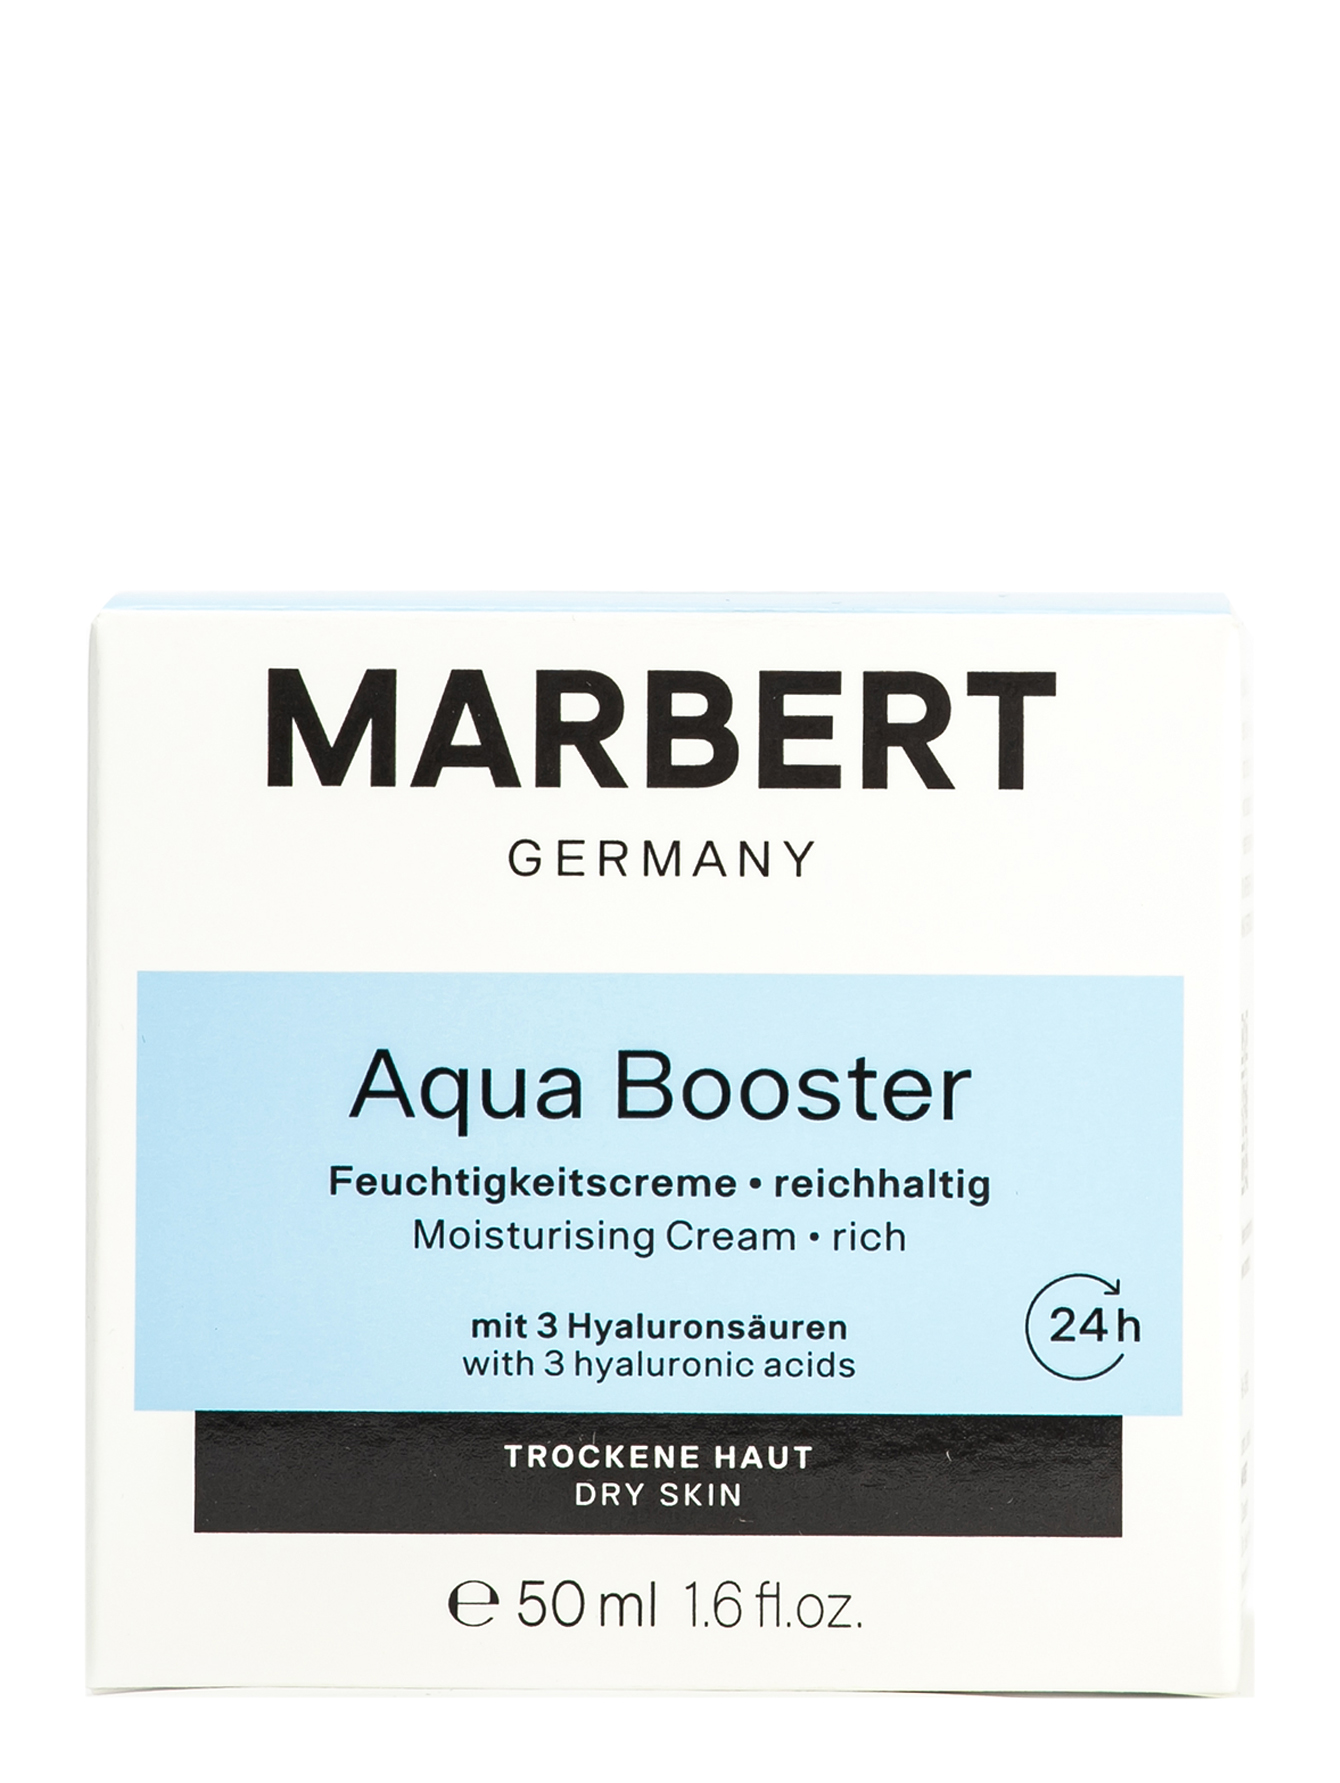 Интенсивный увлажняющий крем для сухой кожи Aqua Booster Moisturising Creame, 50 мл - Обтравка1